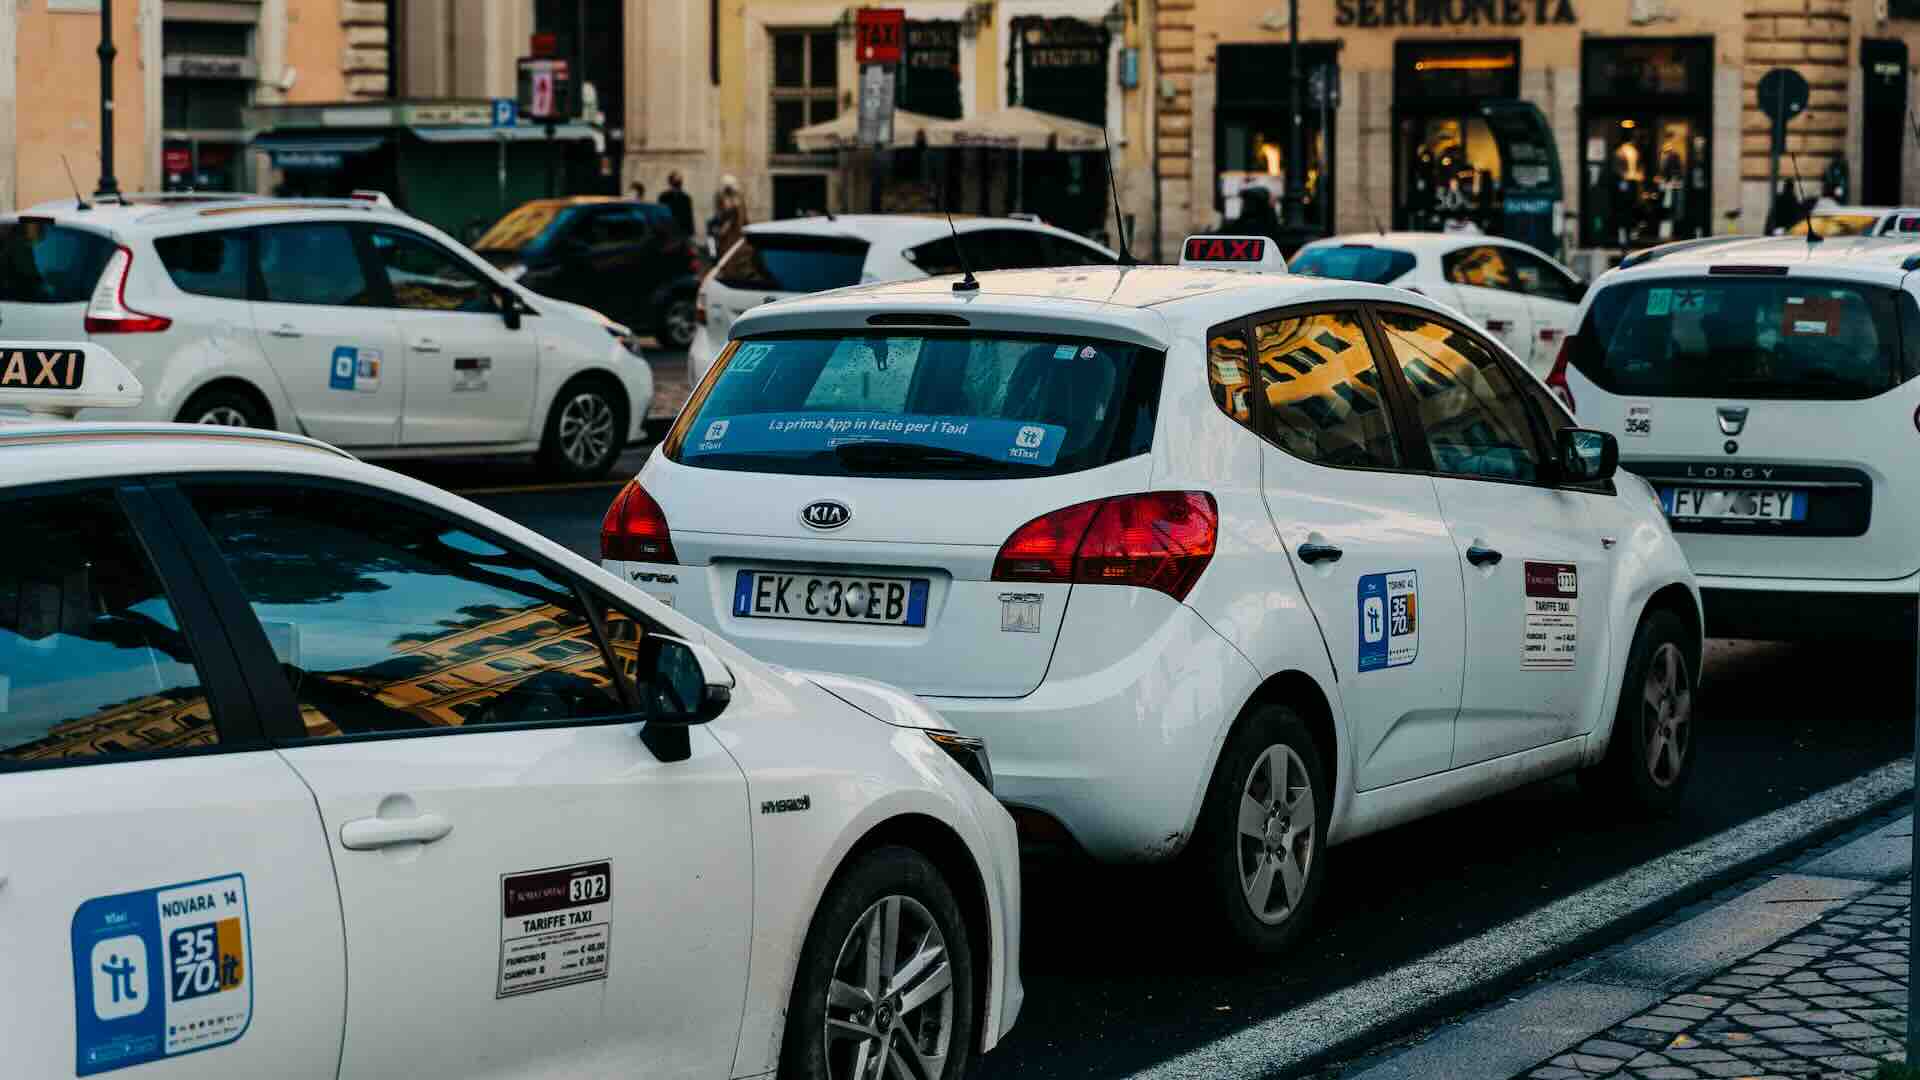 Sciopero taxi revocato dopo l’incontro al MIT